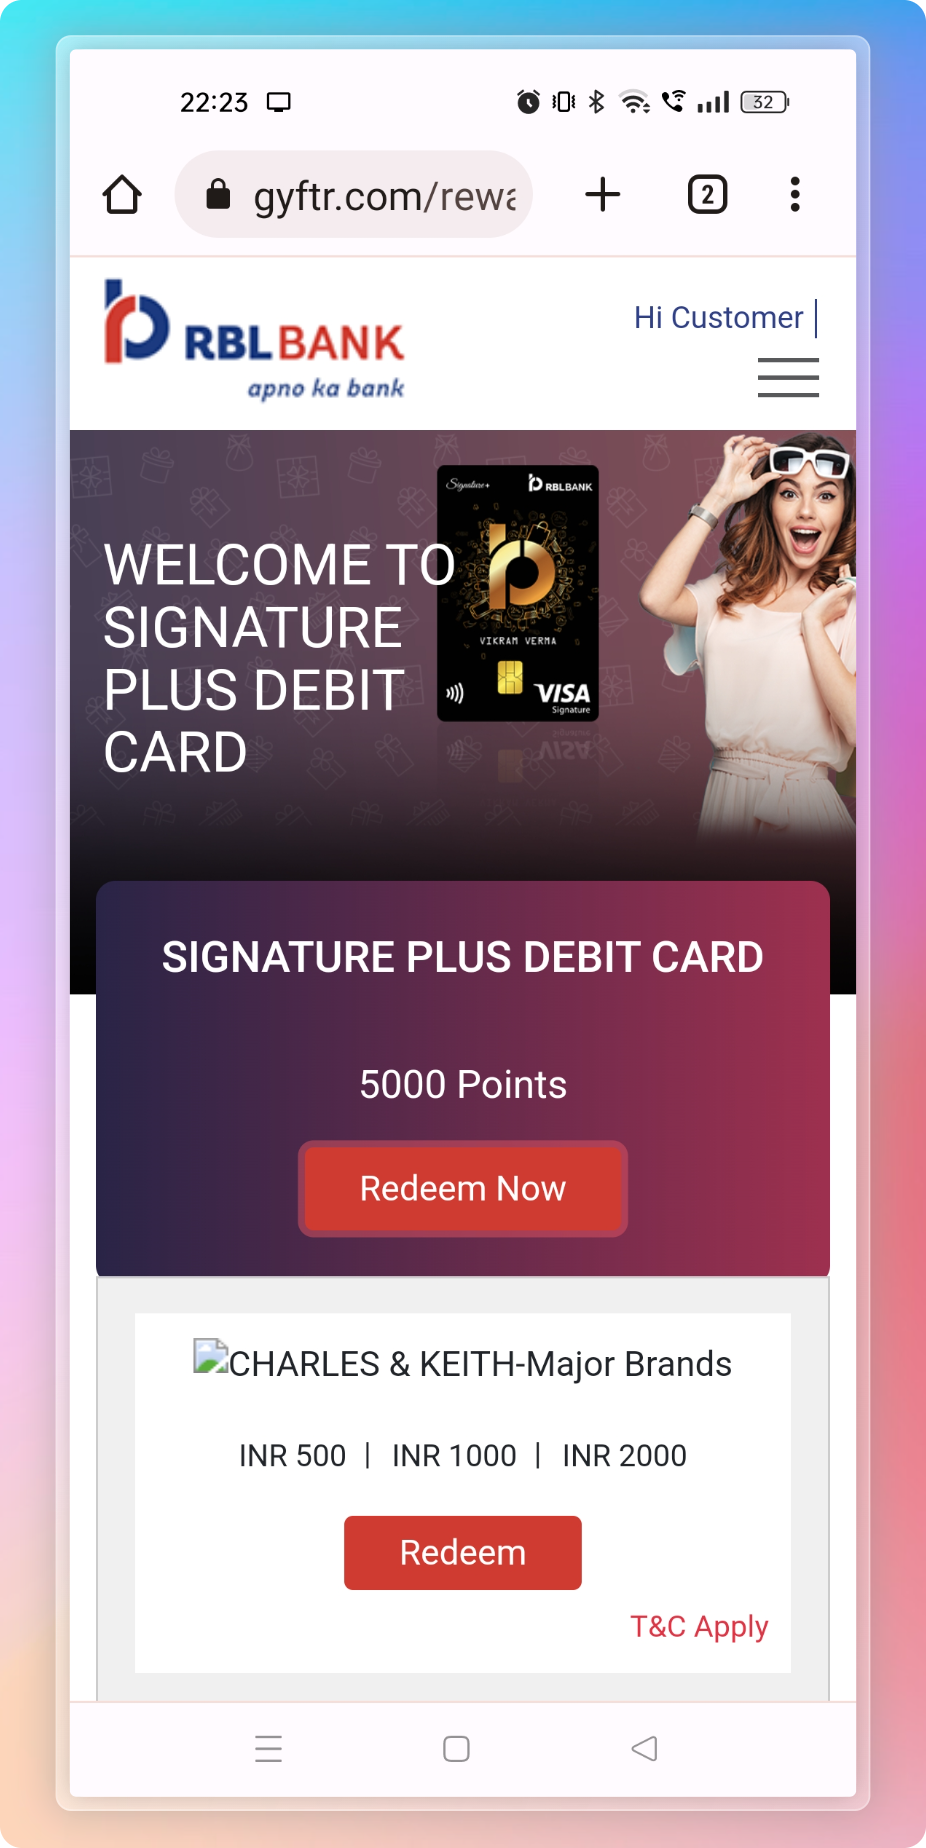 RBL Bank Signature+ Debit Card - points redemption